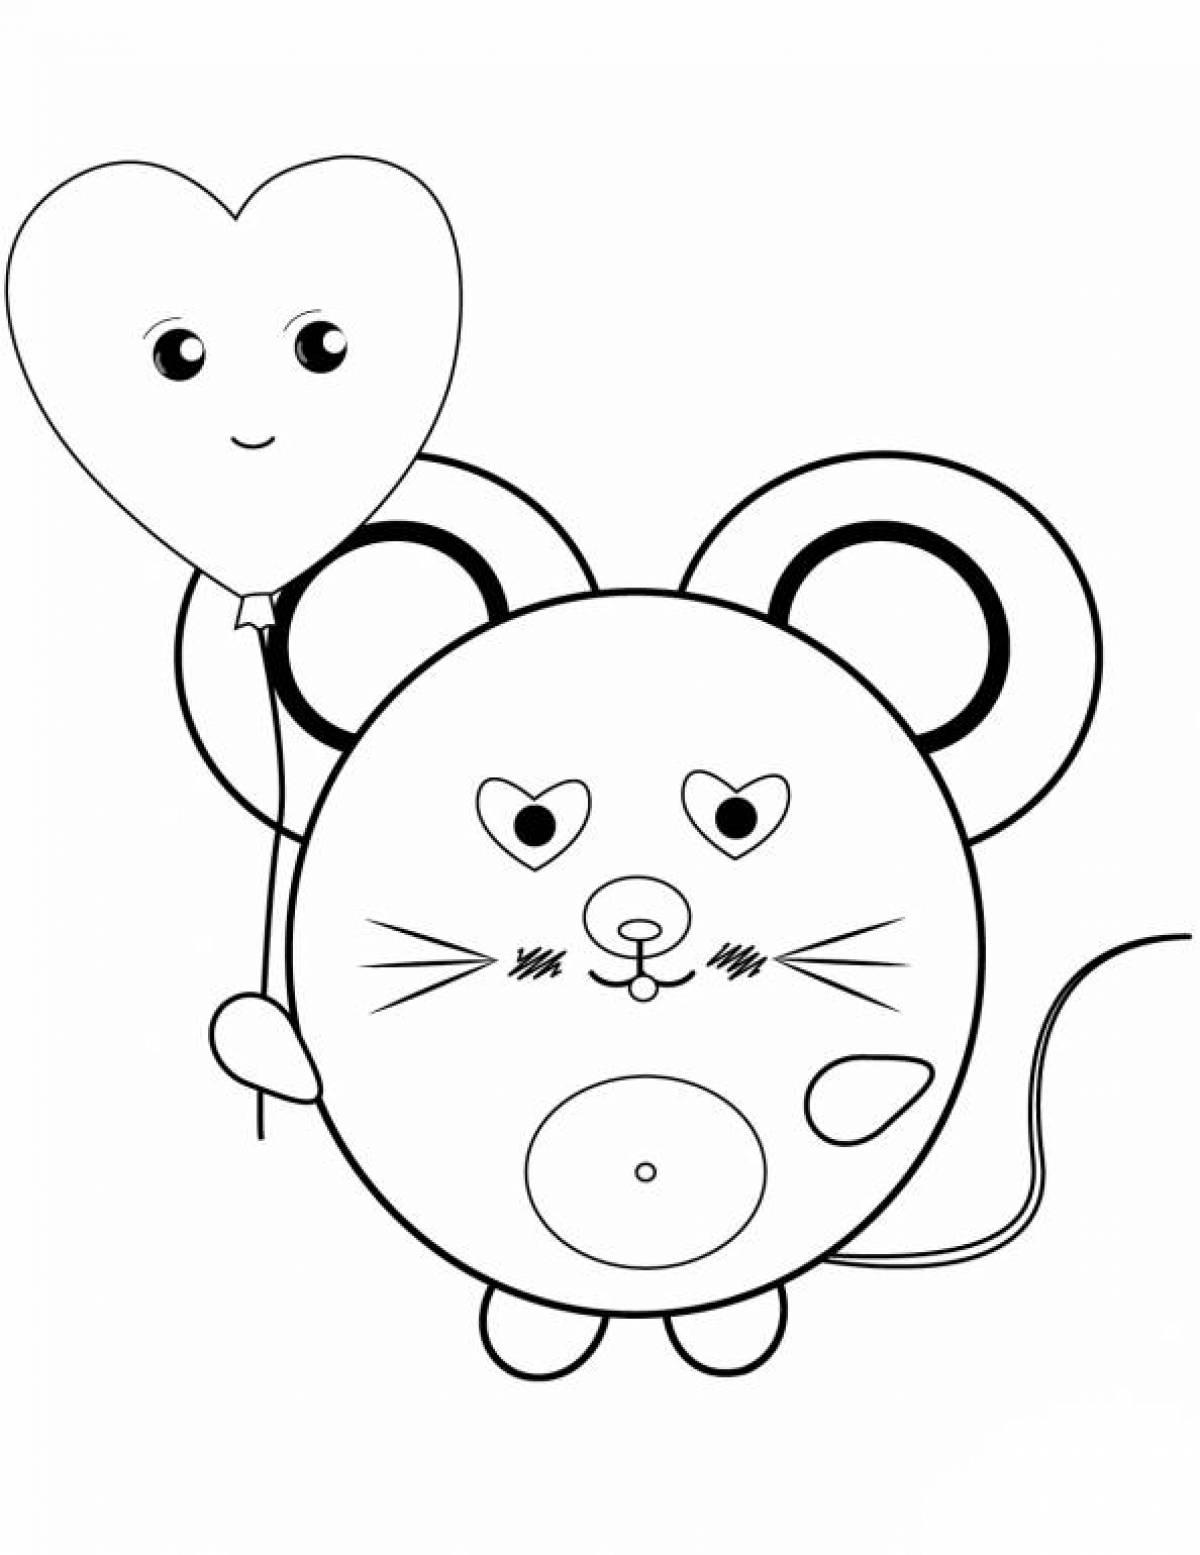 Раскраска милая мышка